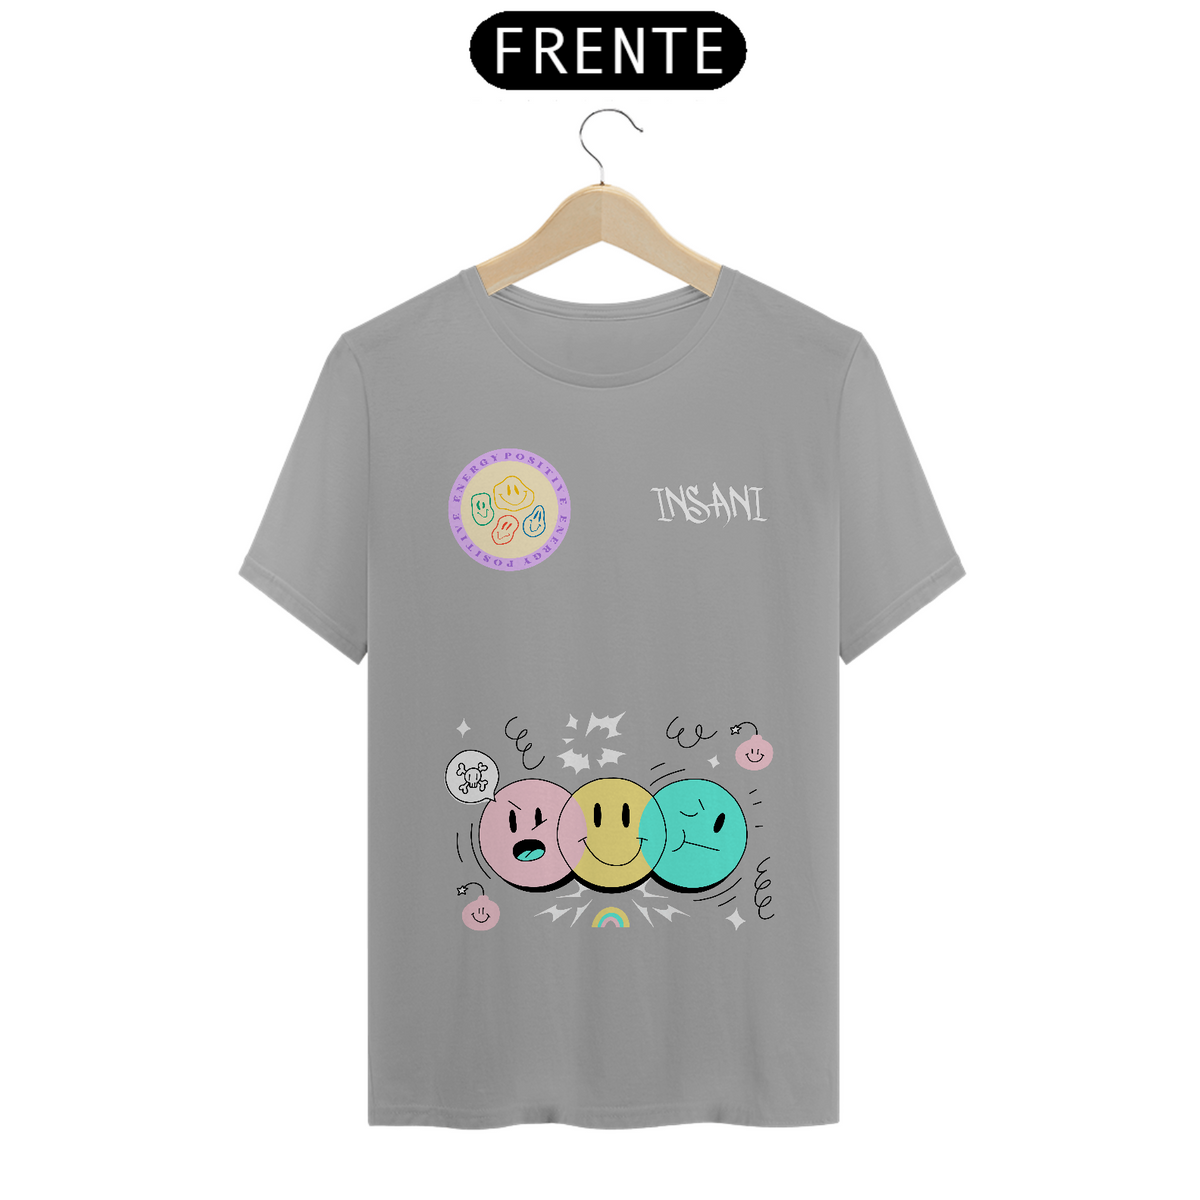 Nome do produto: Camiseta Cute Cute Insani